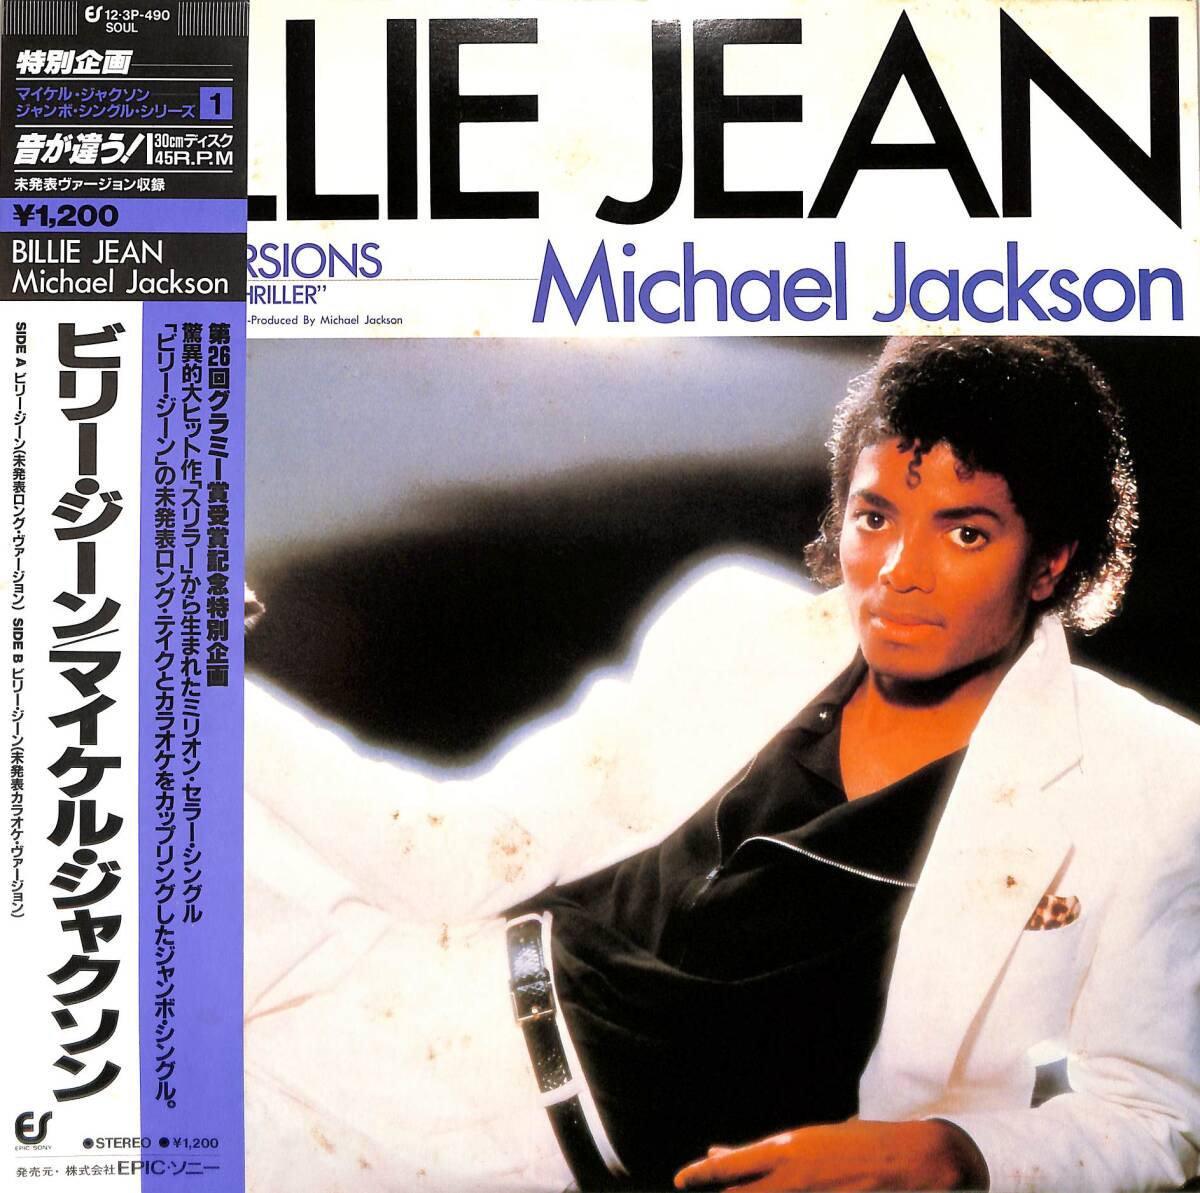 A00594210/12インチ/マイケル・ジャクソン (MICHAEL JACKSON)「Billie Jean (1984年・12-3P-490・ディスコ・DISCO)」の画像1